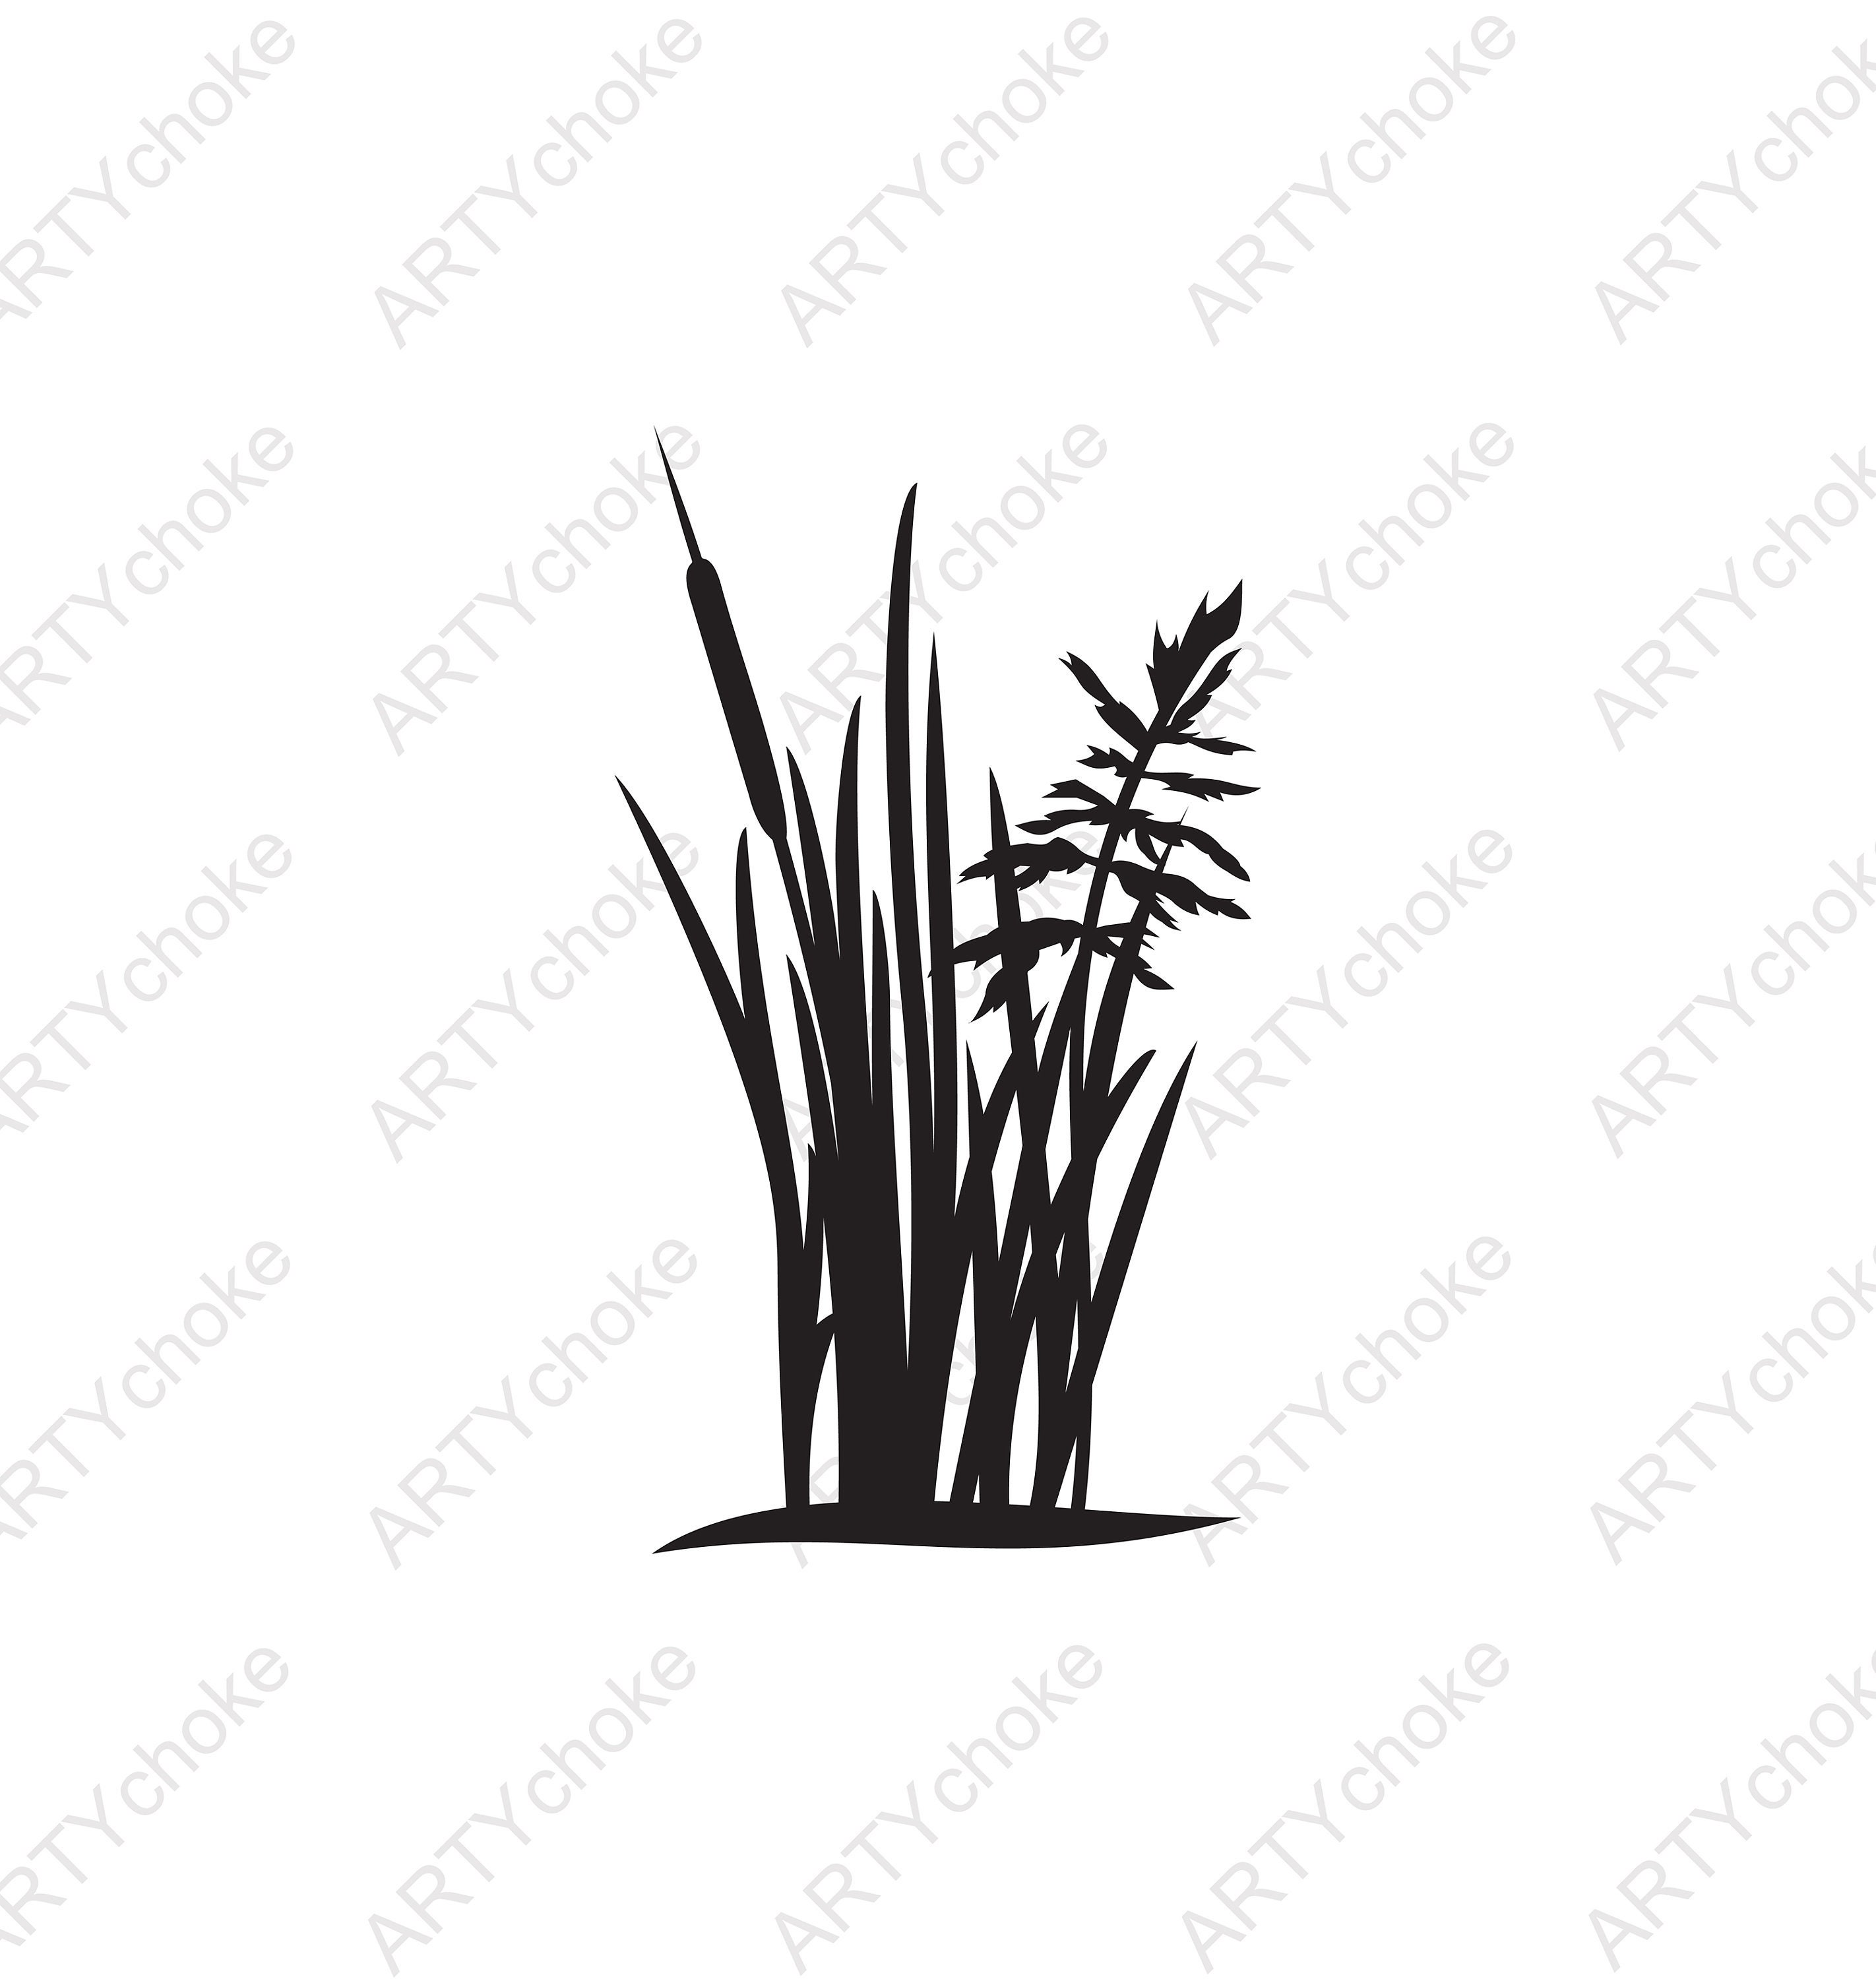 Grass silhouette. Files prepared for Cricut. SVG Clip Art. | Etsy